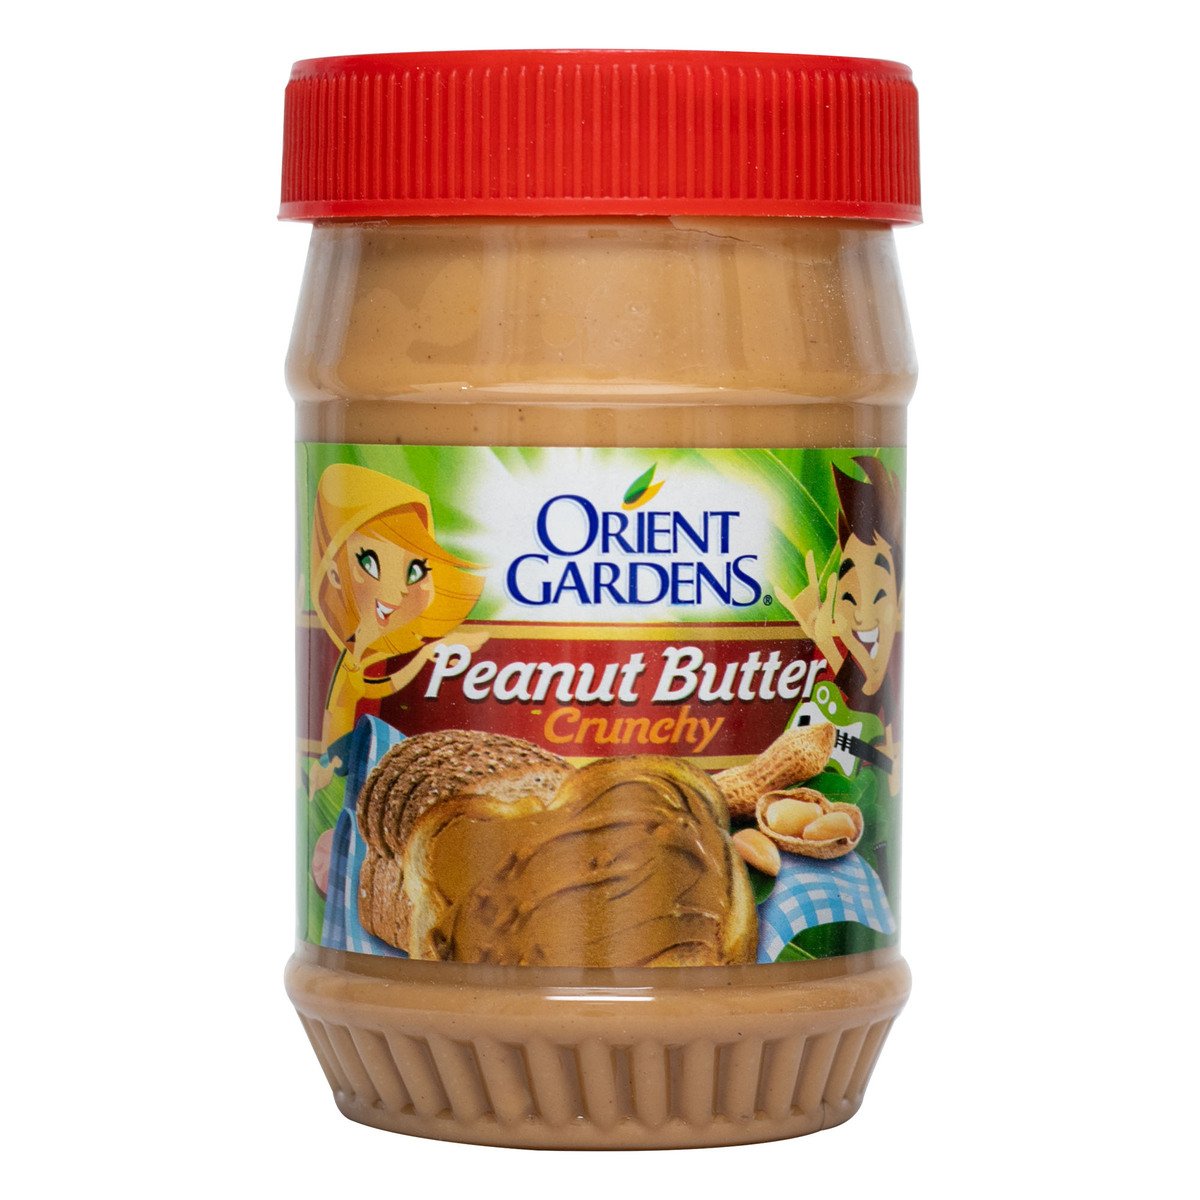 Orient Gardens Crunchy Peanut Butter 510 g